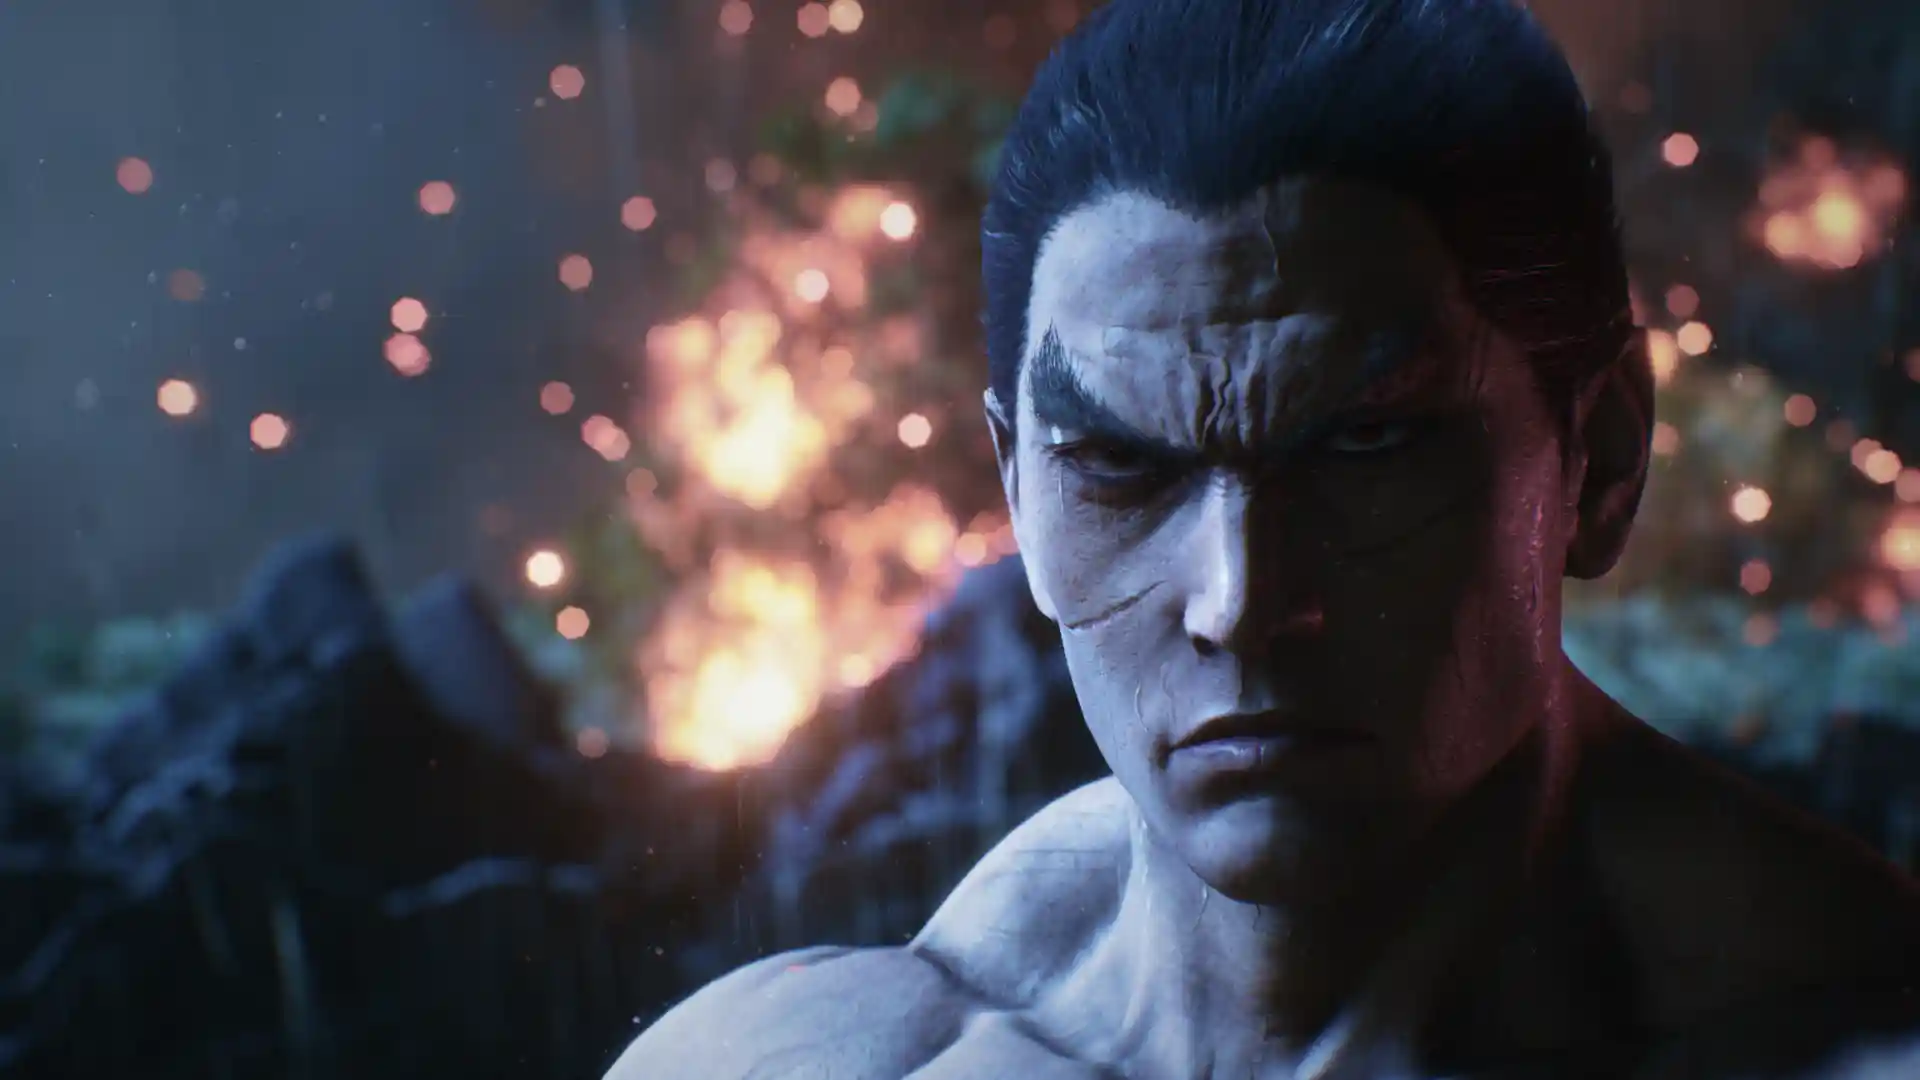 Tekken 8 é anunciado para PS5, Xbox Series X/S e PC; veja trailer